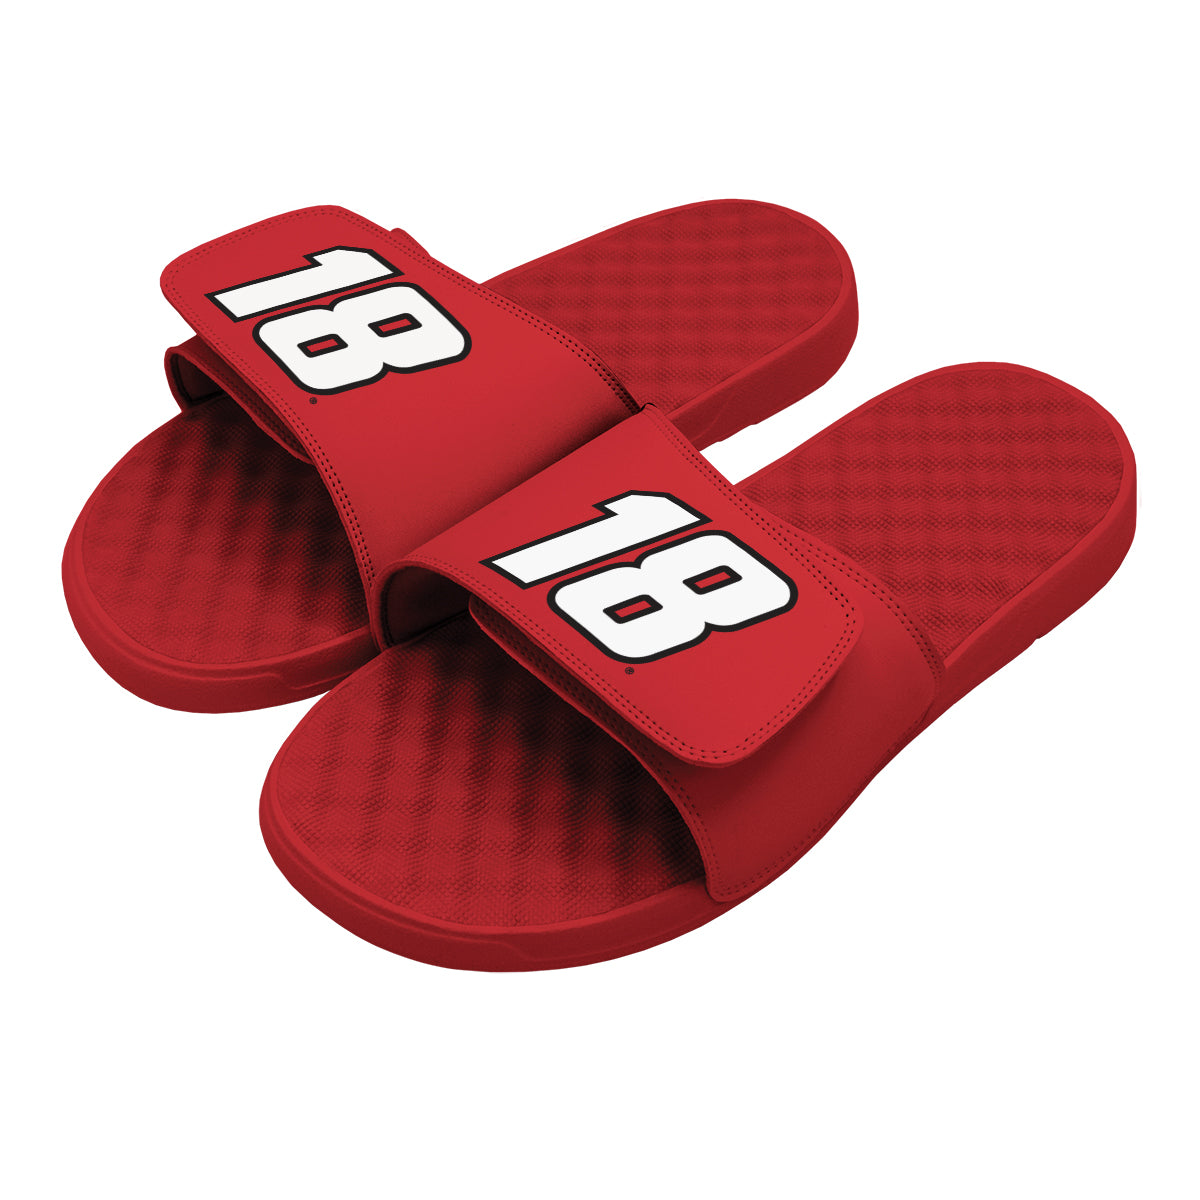 Kyle Busch 18 Slides